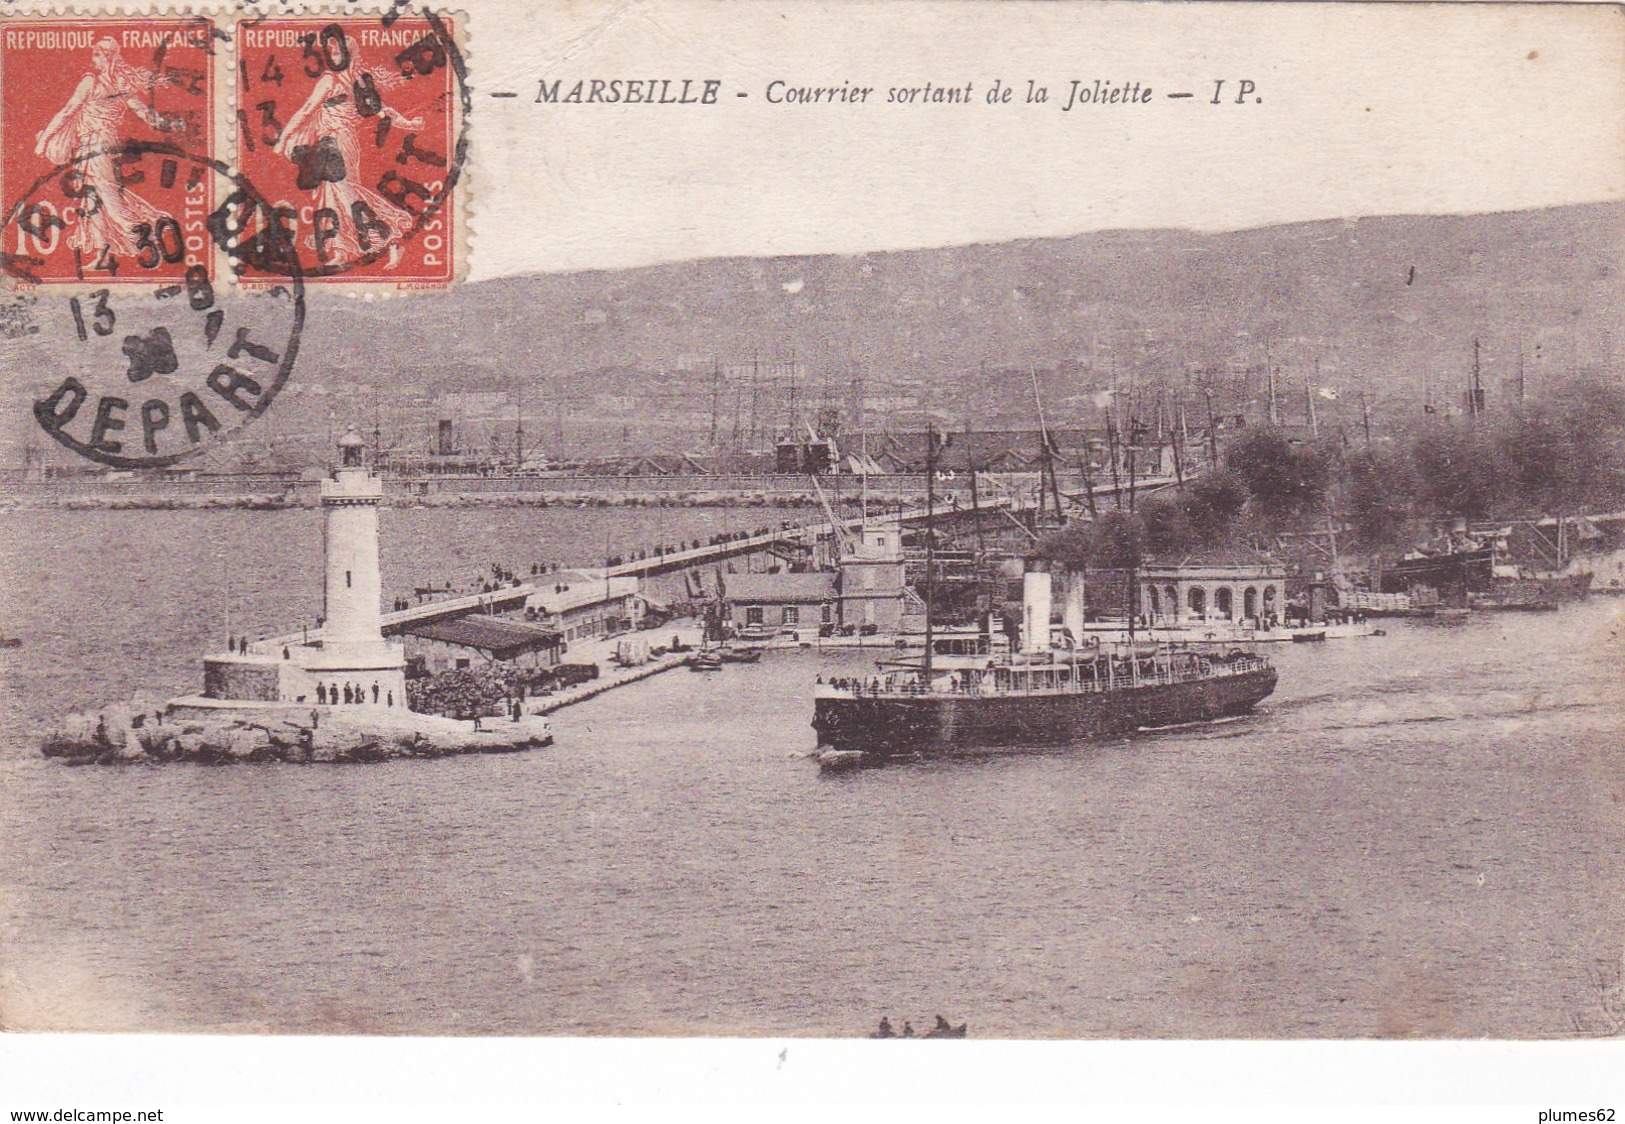 Marseille.Courrier Sortant De La Joliette (20) - Vieux Port, Saint Victor, Le Panier